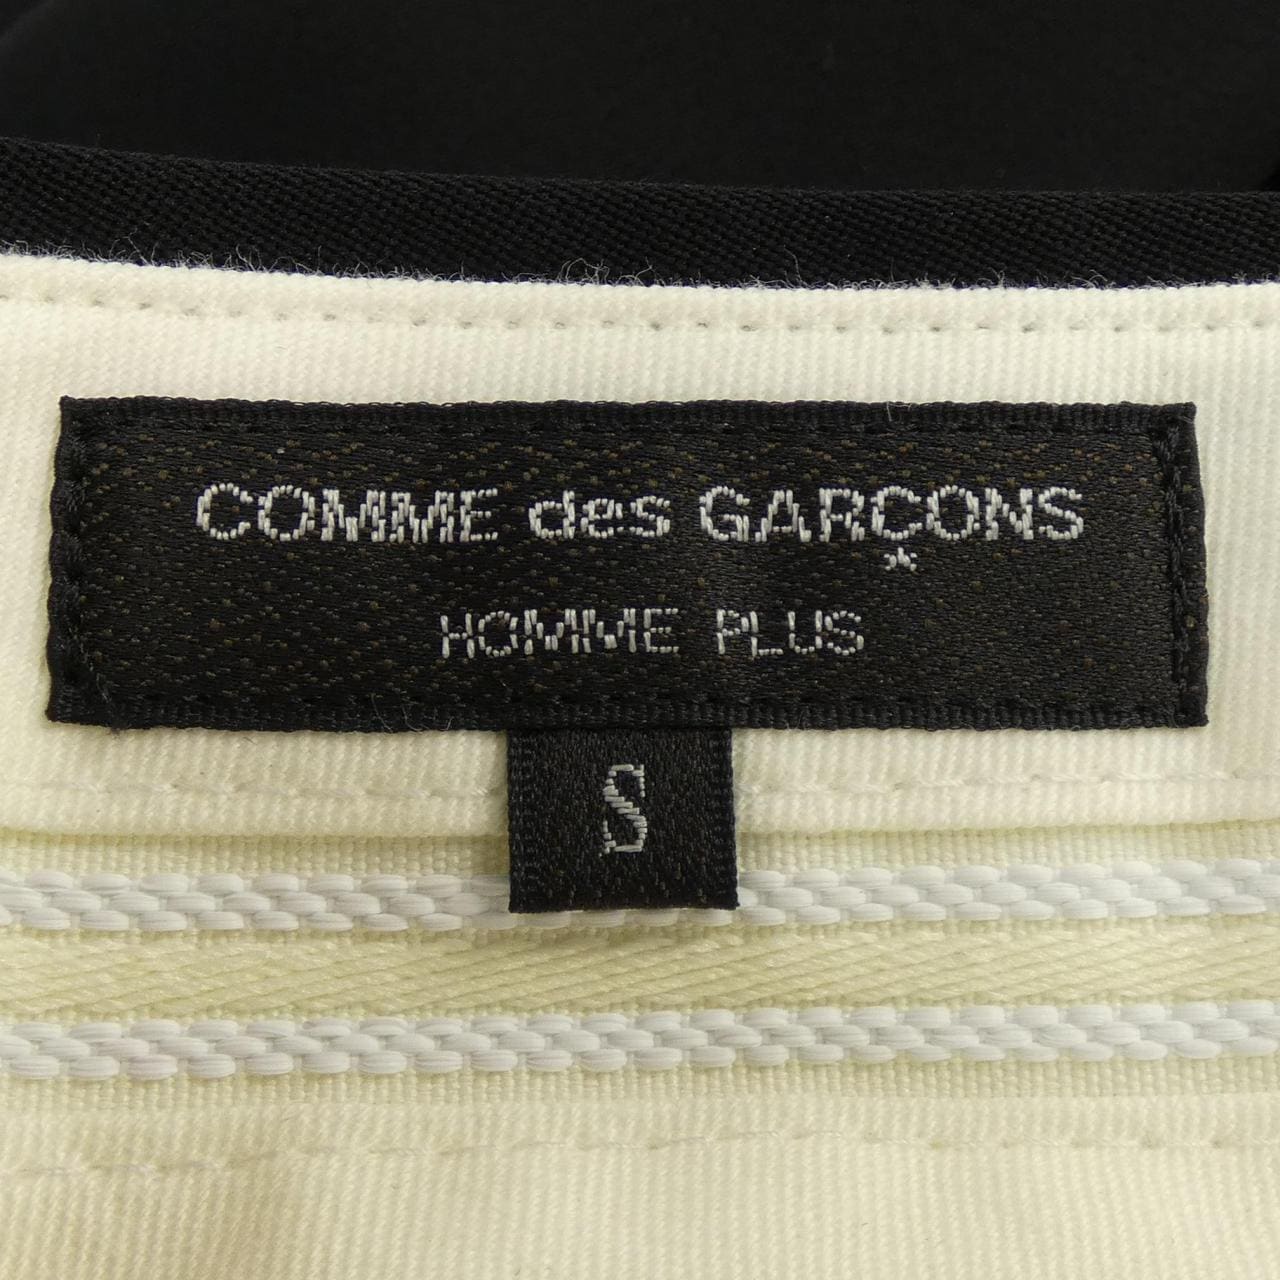 COMDEGARSONU PURUS GARCONS HOMME plus褲